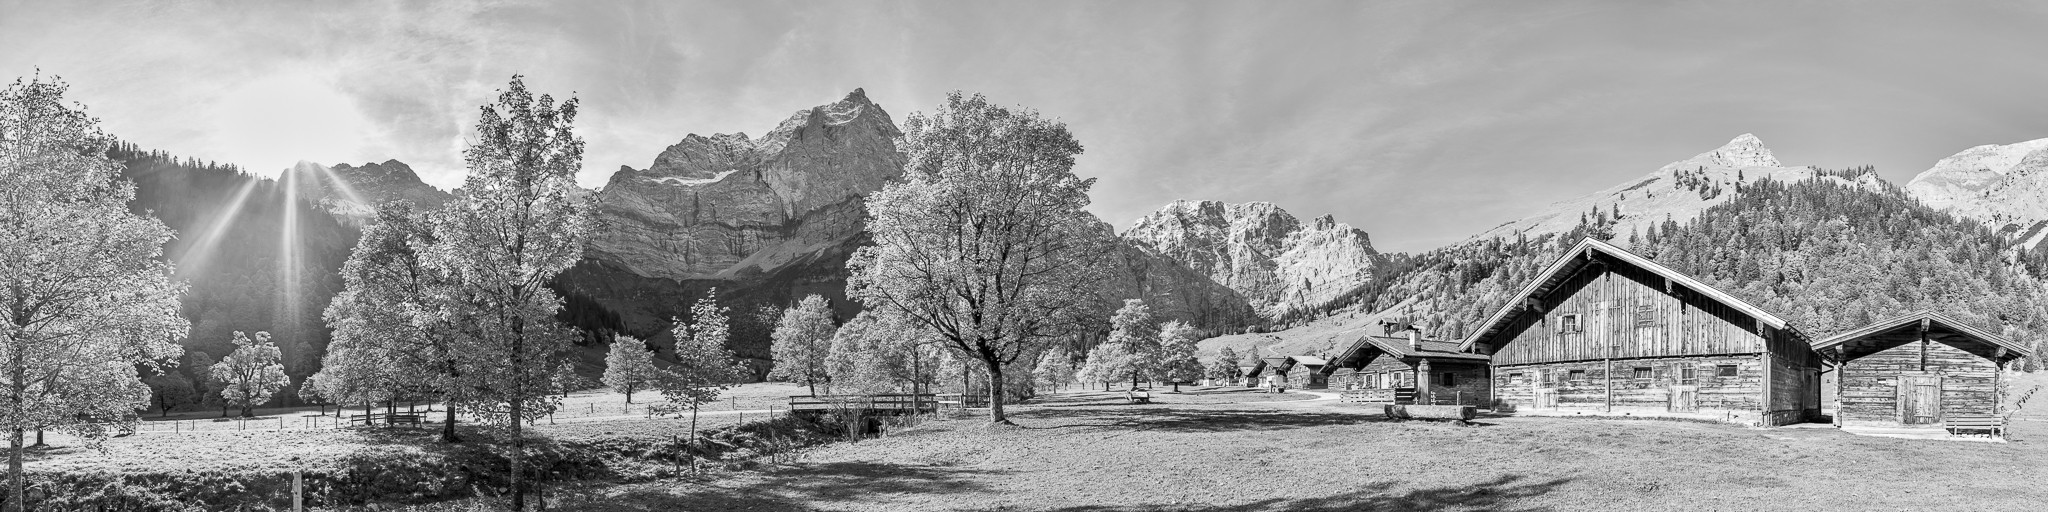 Engalm Panorama schwarz weiß. Ausflug zur Engalm im Herbst. Idyllisches Almdorf in Tirol am Großen Ahornboden